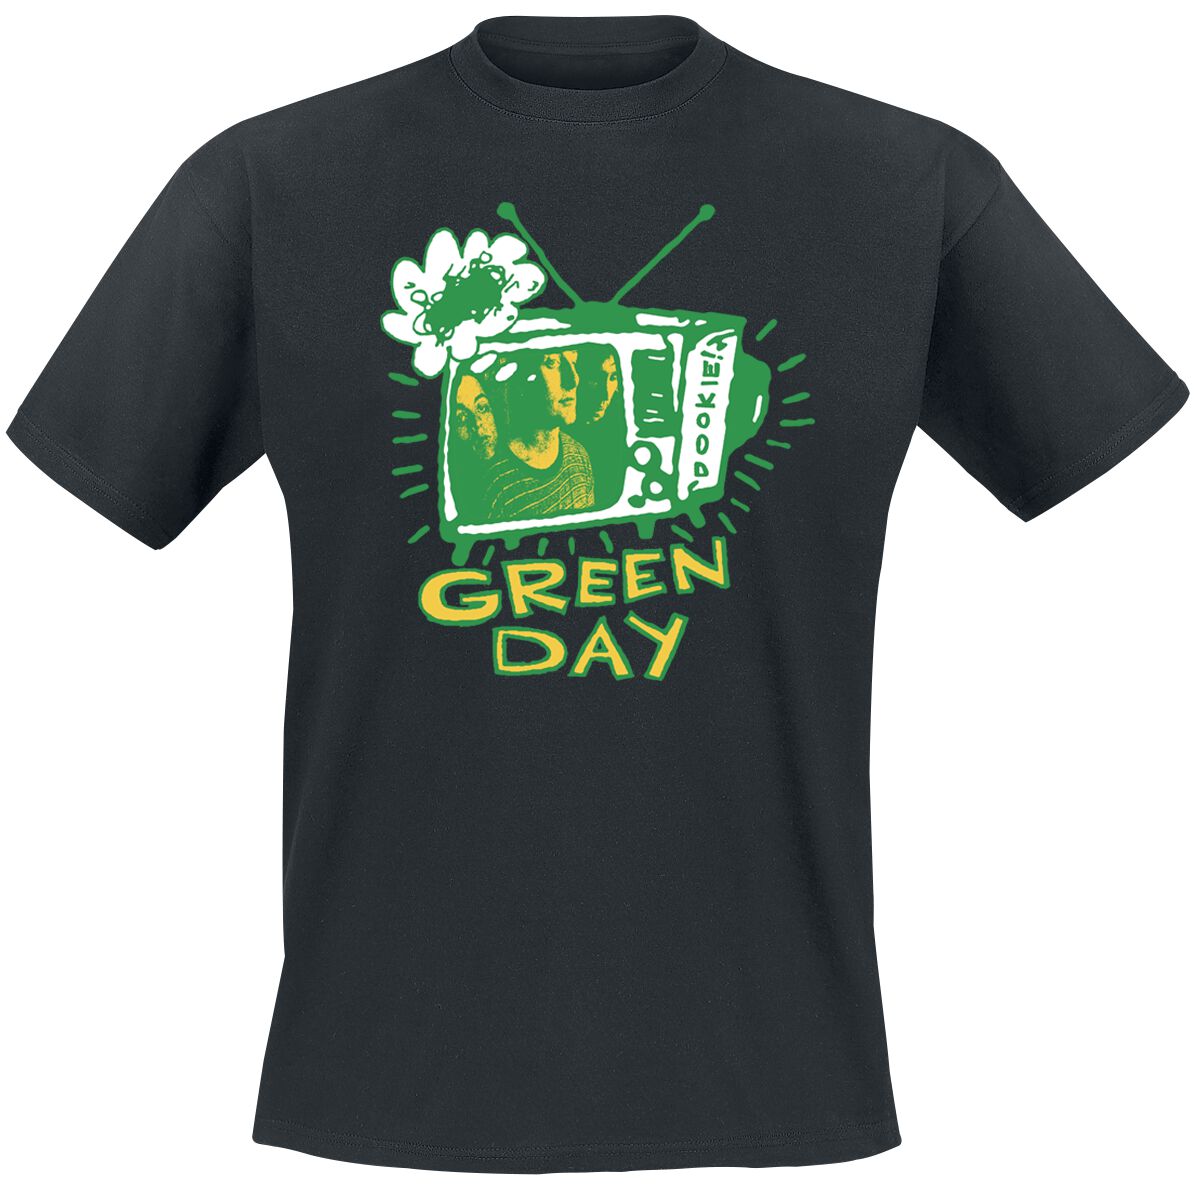 Green Day T-Shirt - Longview TV - S bis XXL - für Männer - Größe M - schwarz  - Lizenziertes Merchandise!